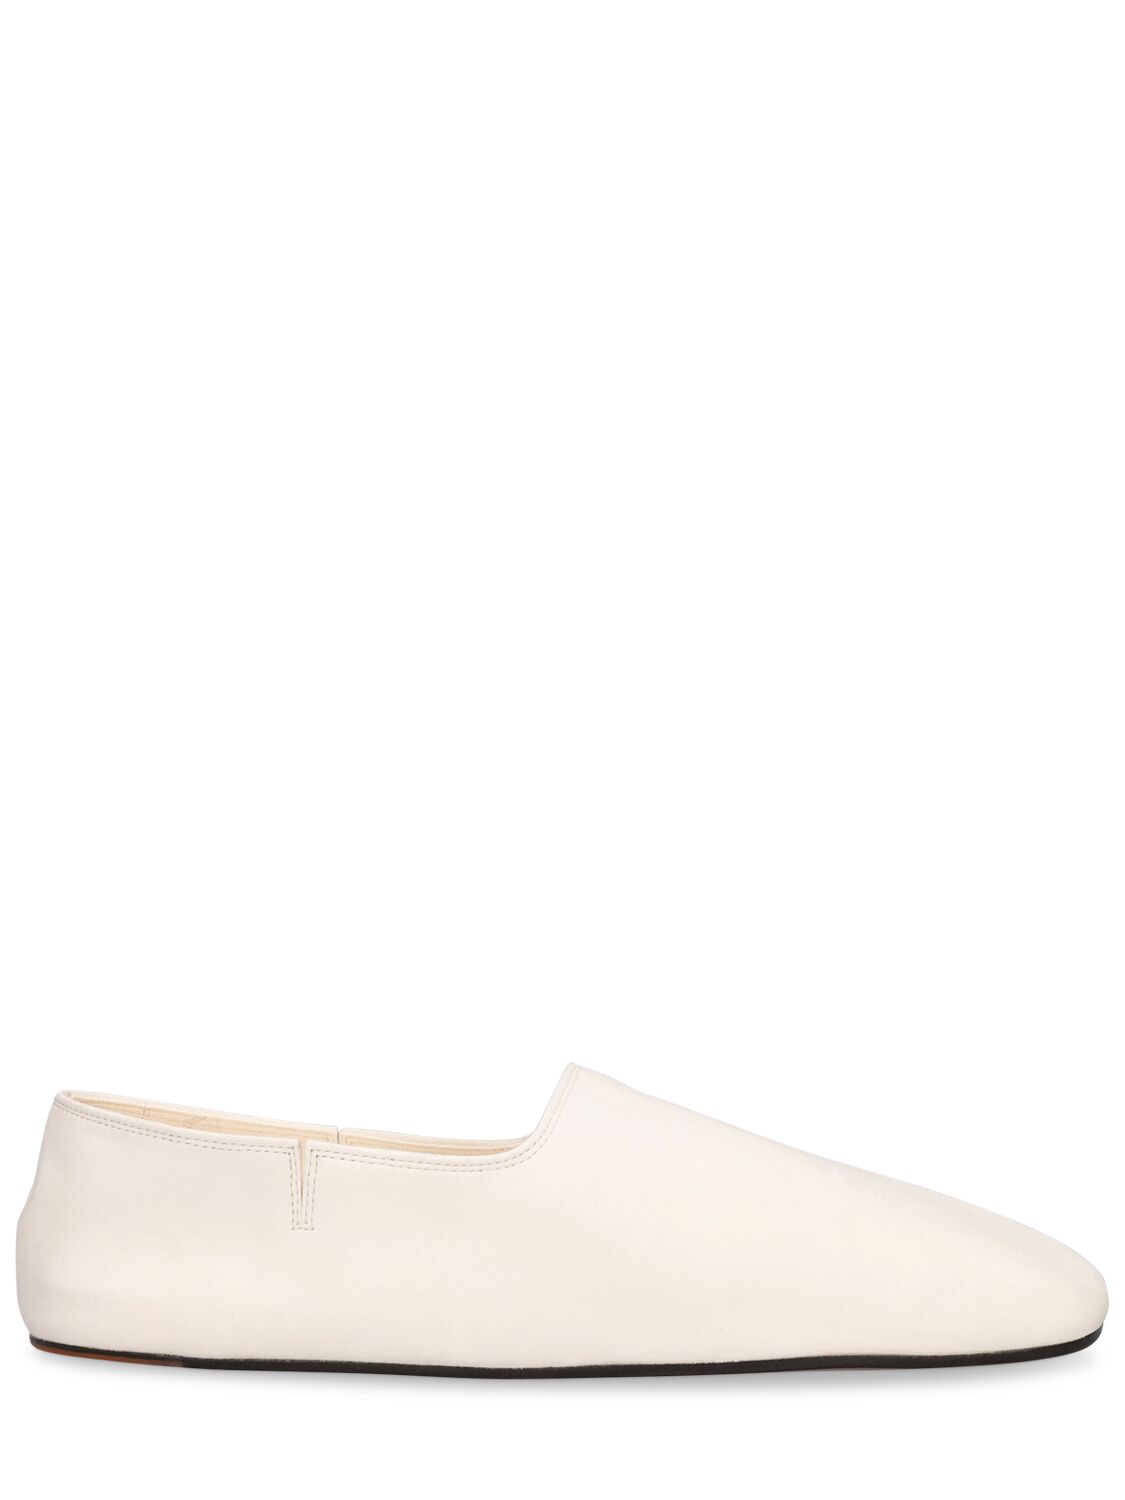 Loro Piana Gravina Suede Slipper Loafers In White | ModeSens GB